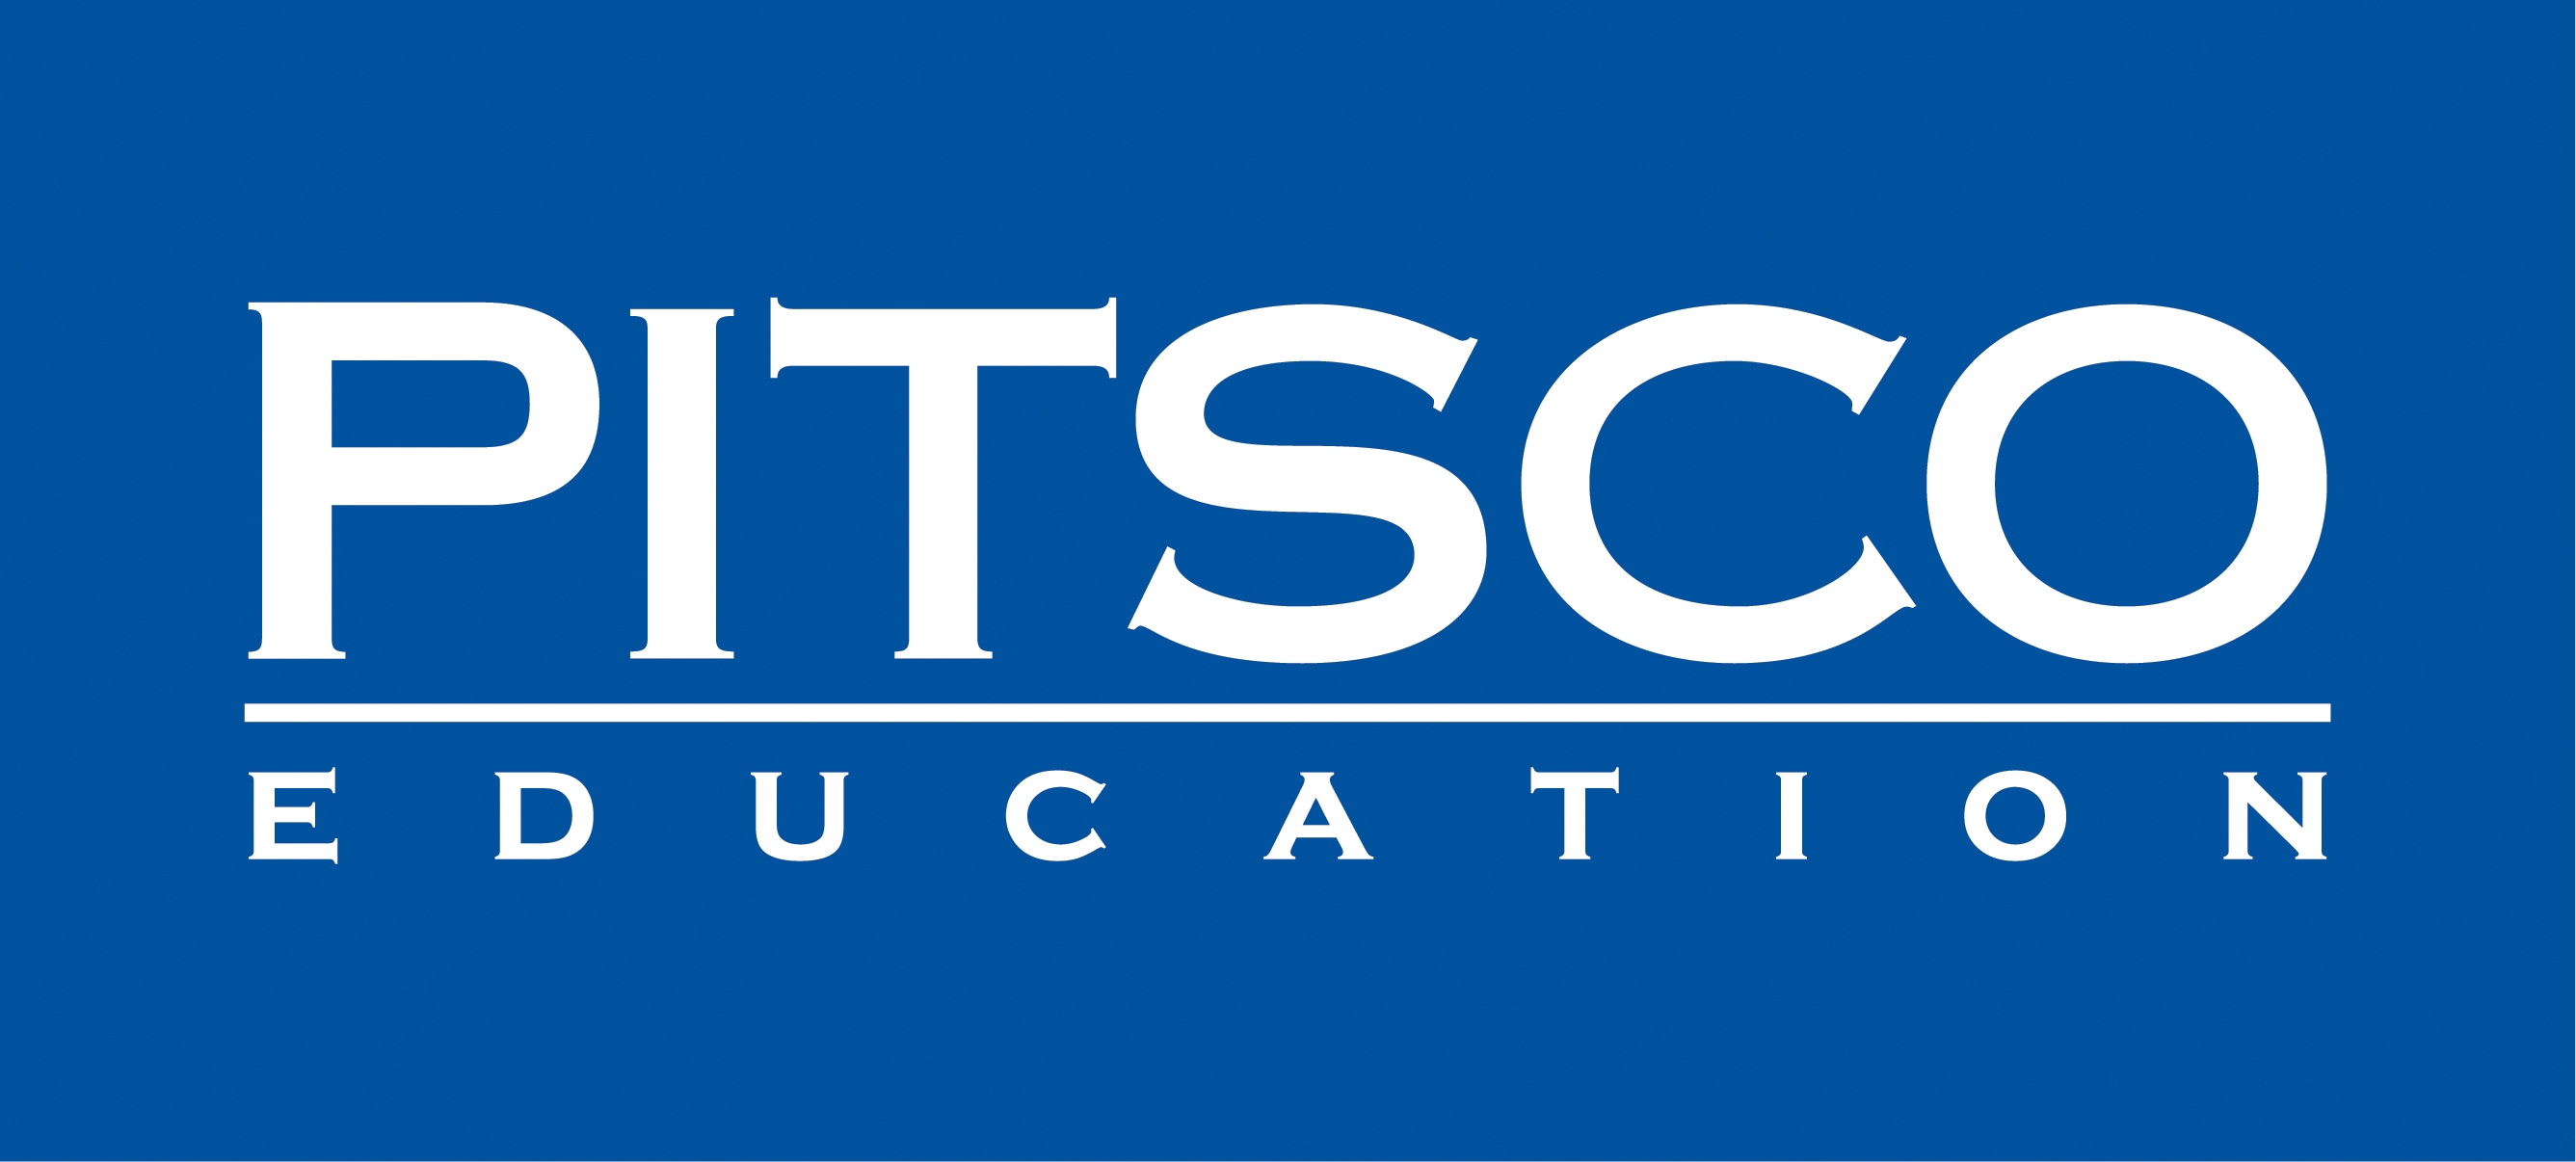 Pitsco Education Catalog logo